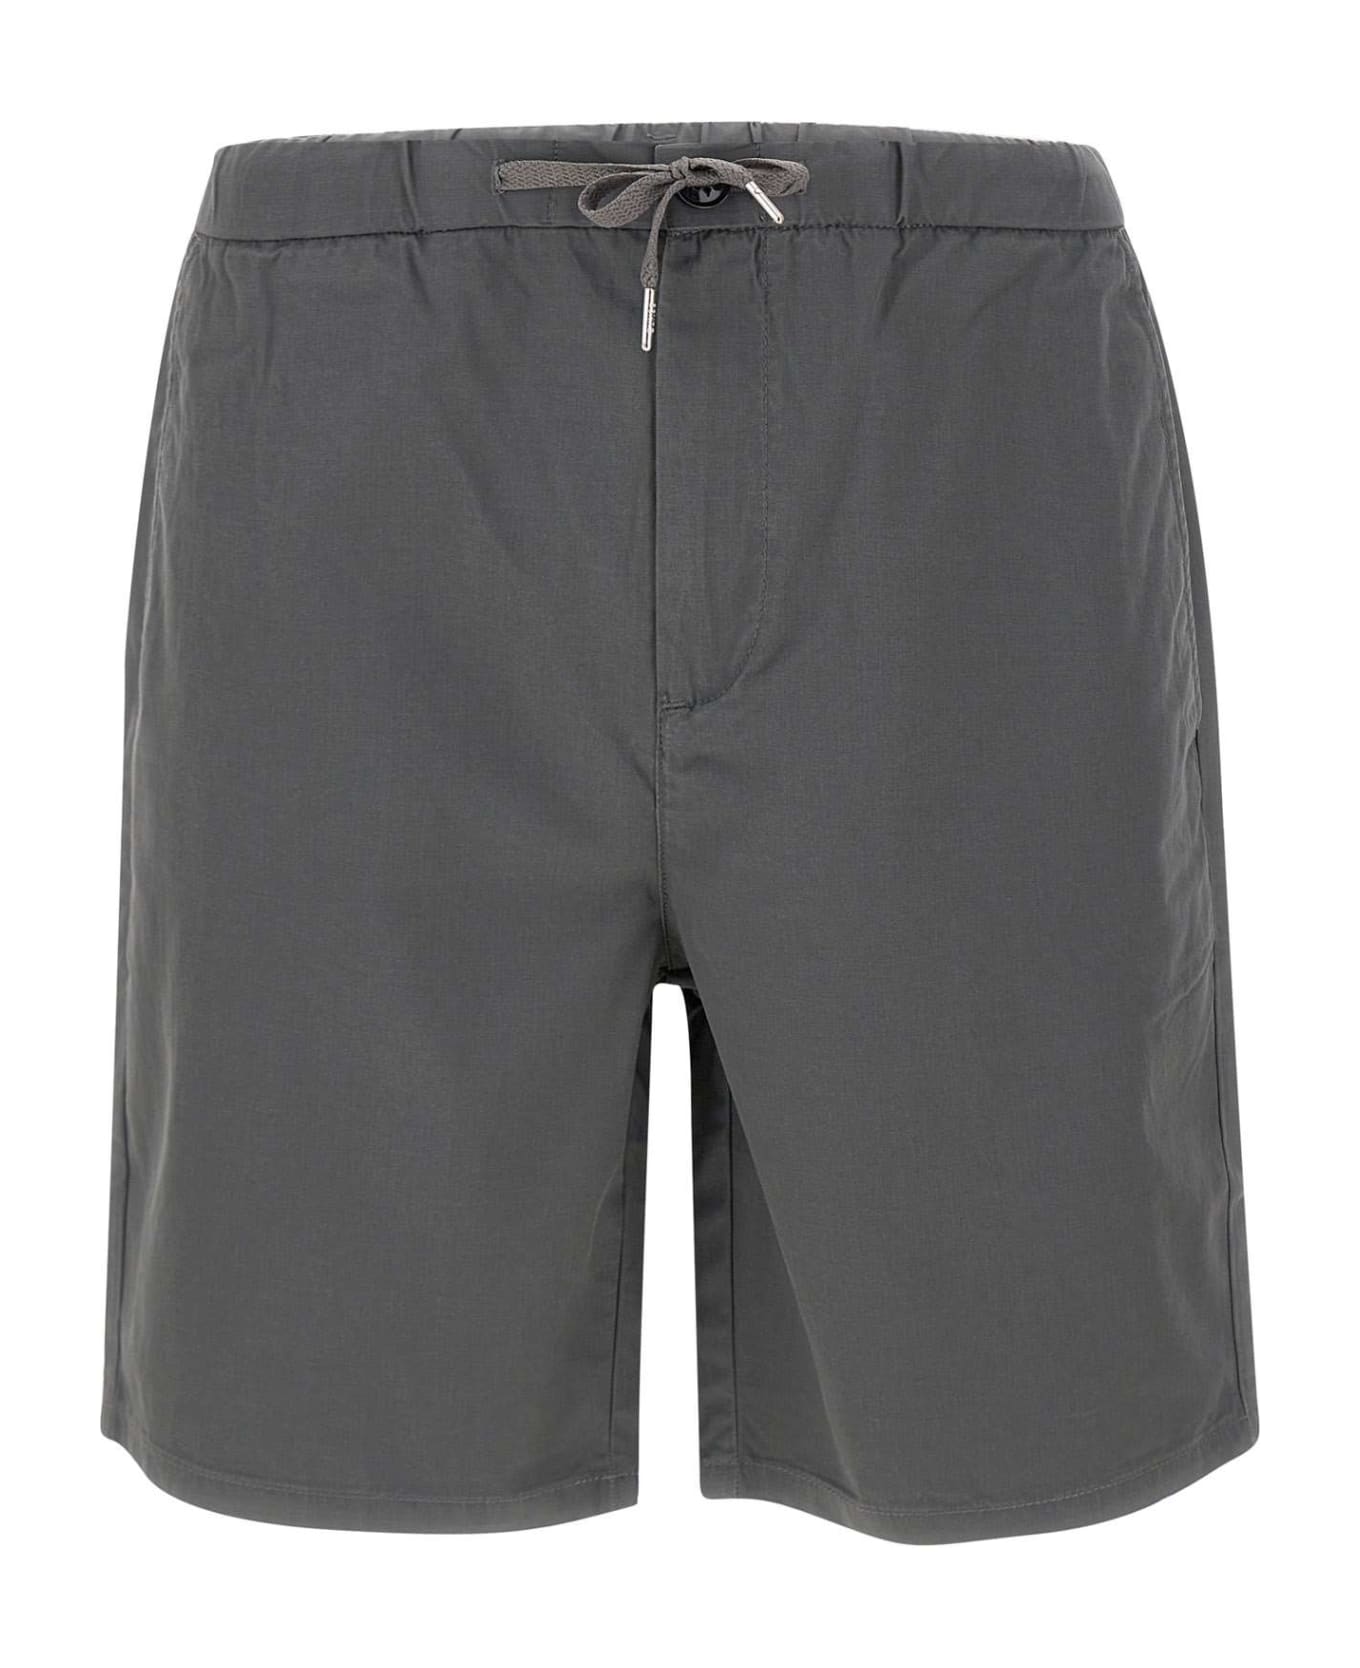 Sun 68 Cotton Shorts - GREY